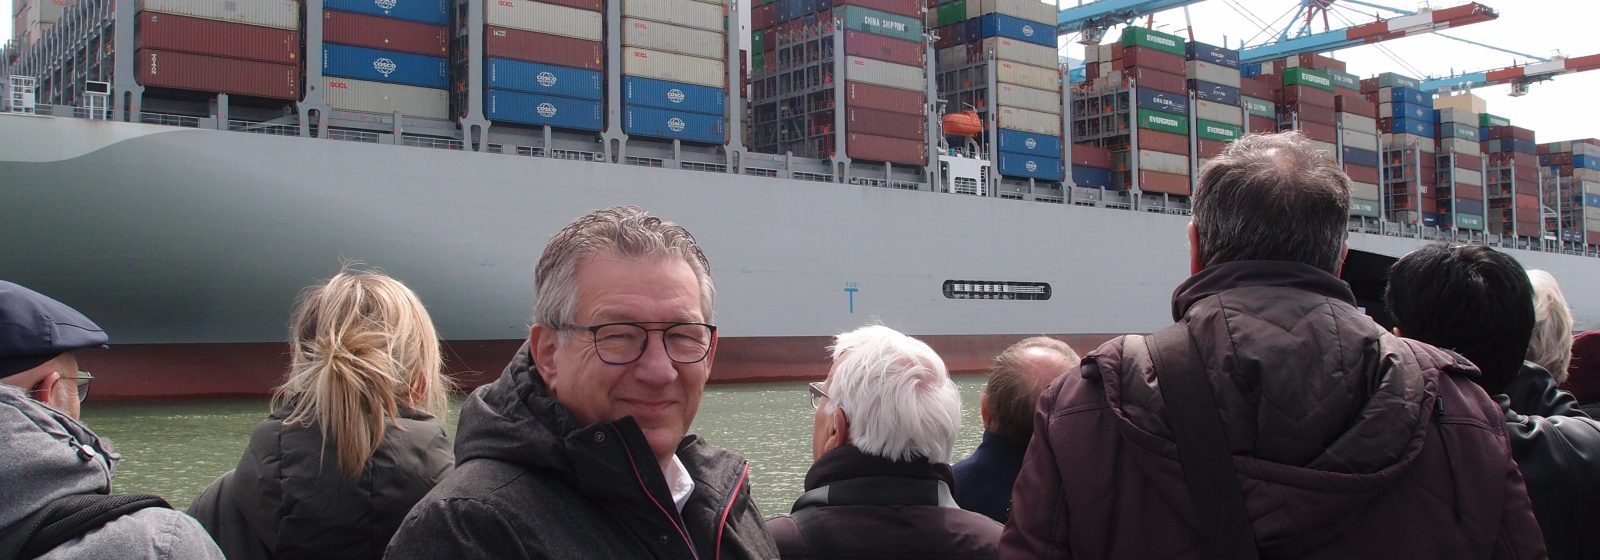 Dirk De fauw bij recordschip 'OOCL Spain' in Zeebrugge